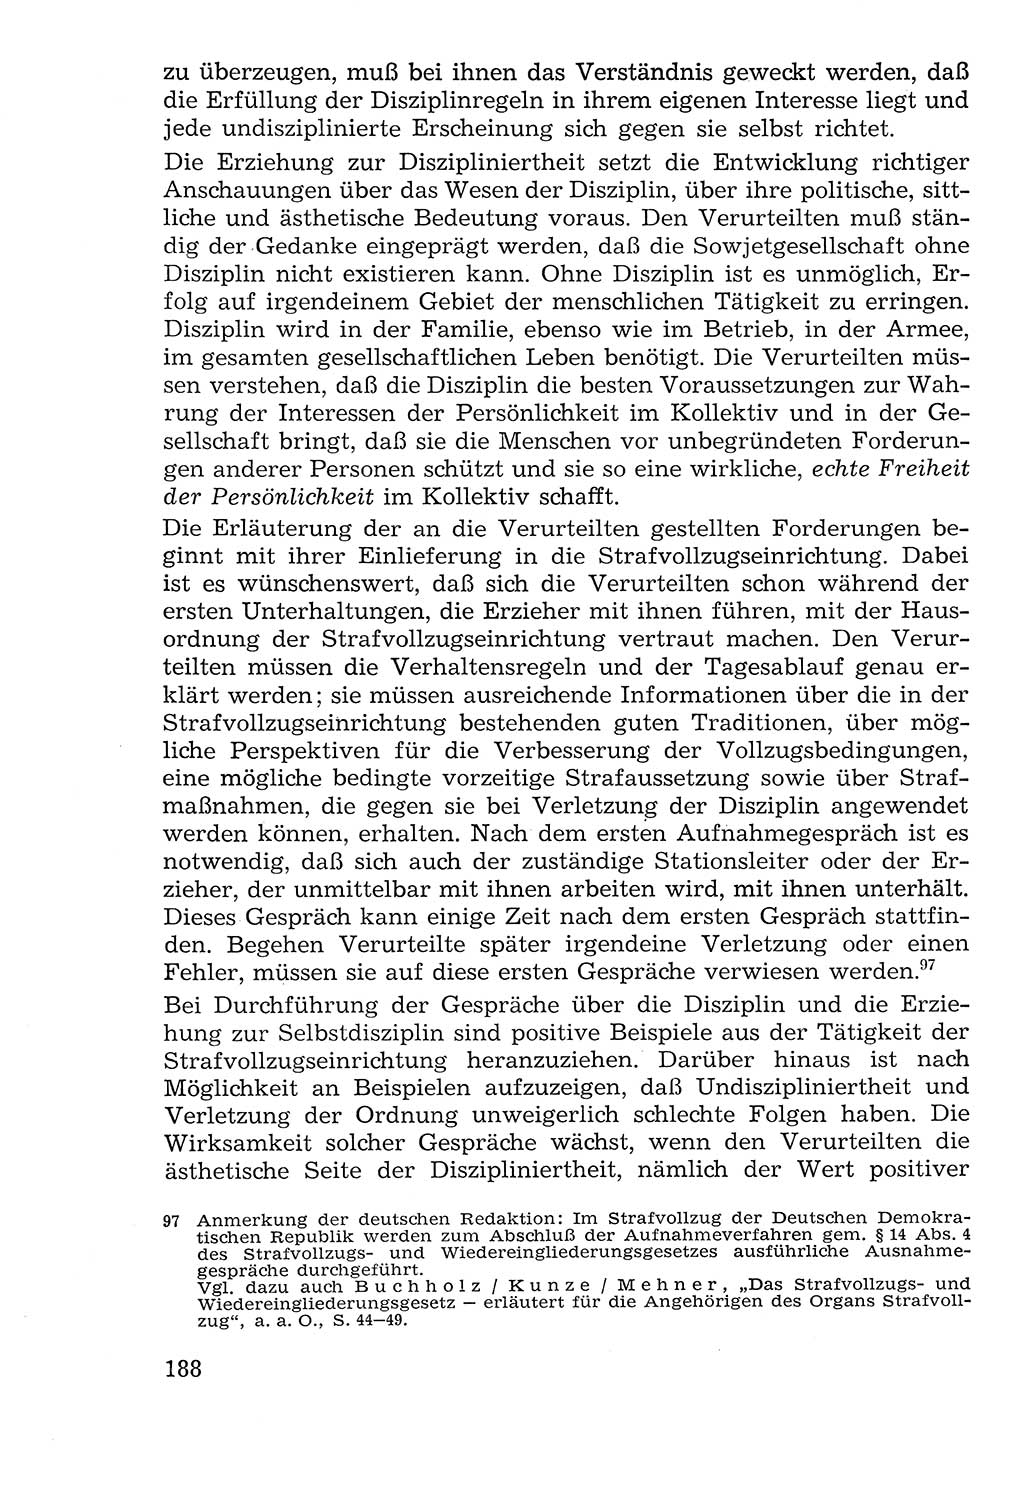 Lehrbuch der Strafvollzugspädagogik [Deutsche Demokratische Republik (DDR)] 1969, Seite 188 (Lb. SV-Pd. DDR 1969, S. 188)